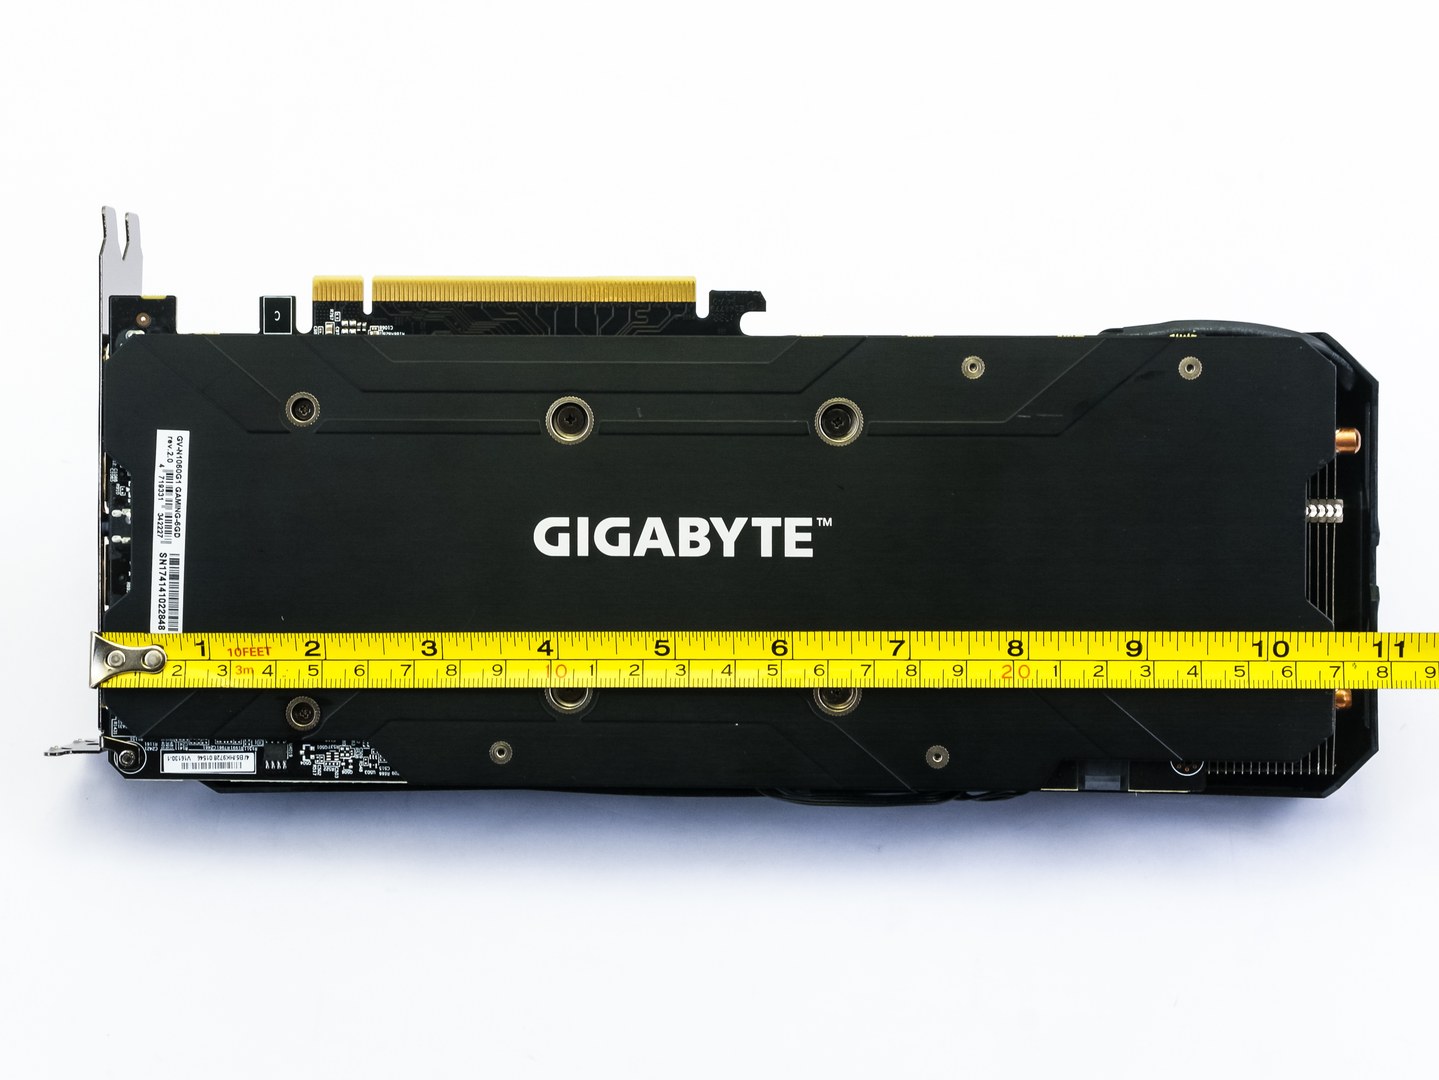 Dvě revize Gigabyte GTX 1060 G1 Gaming, dvě různé karty